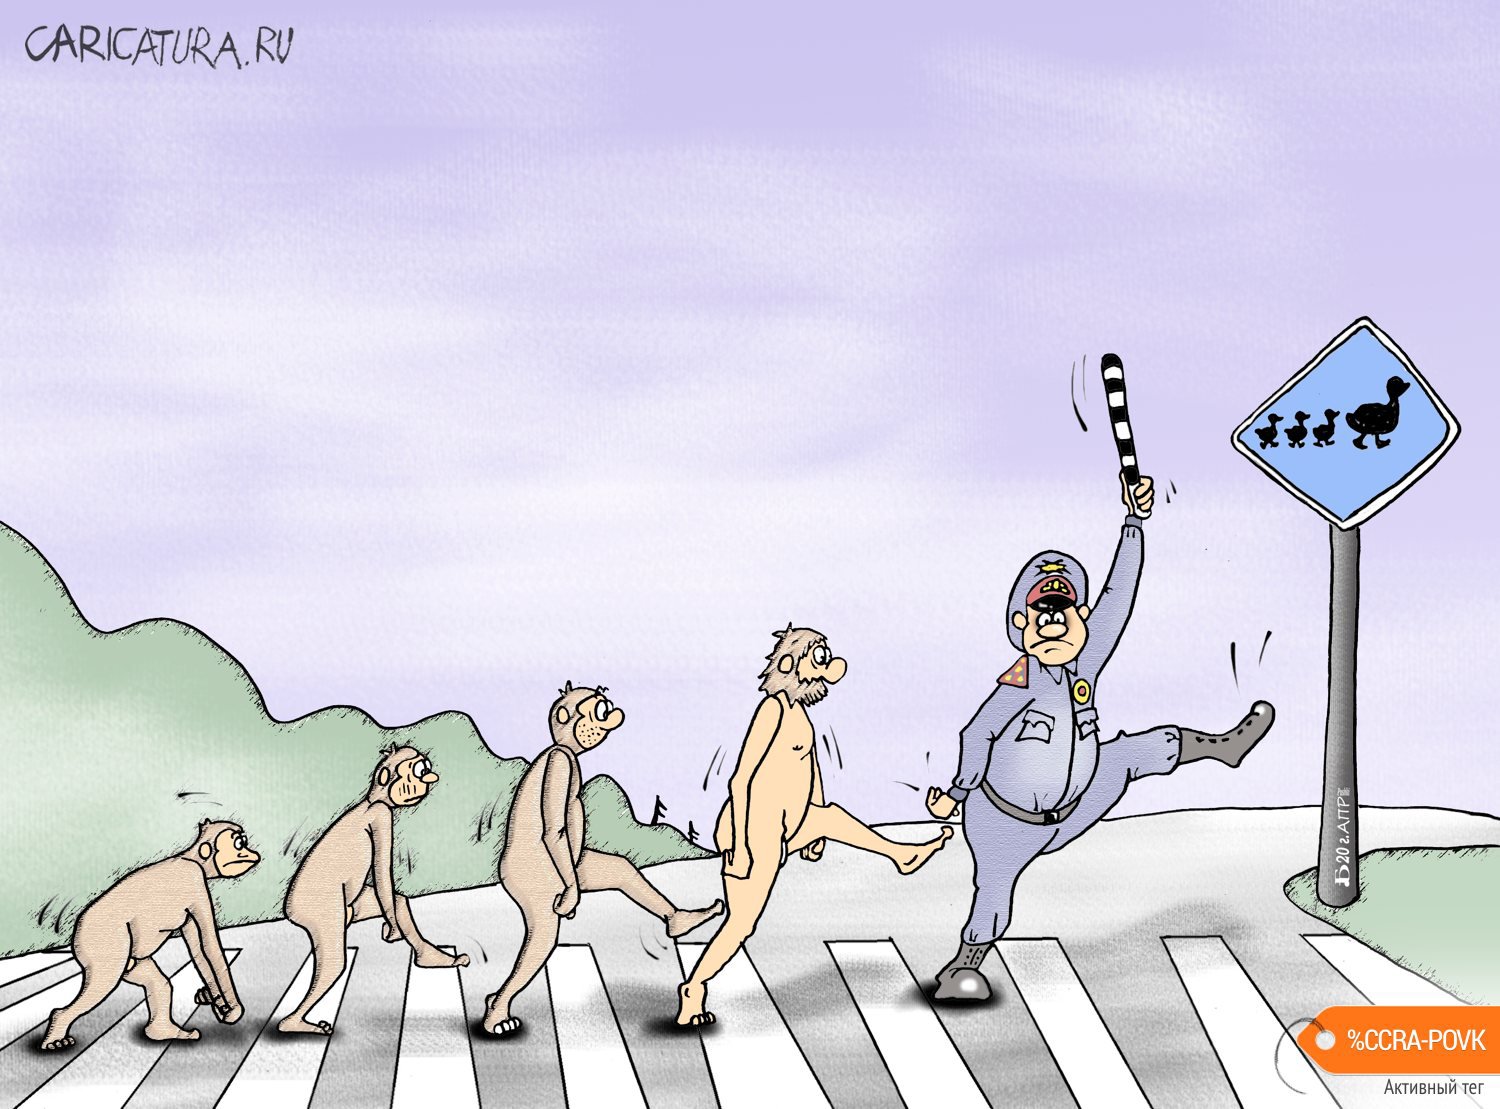 Карикатура "Про эволюцию", Борис Демин